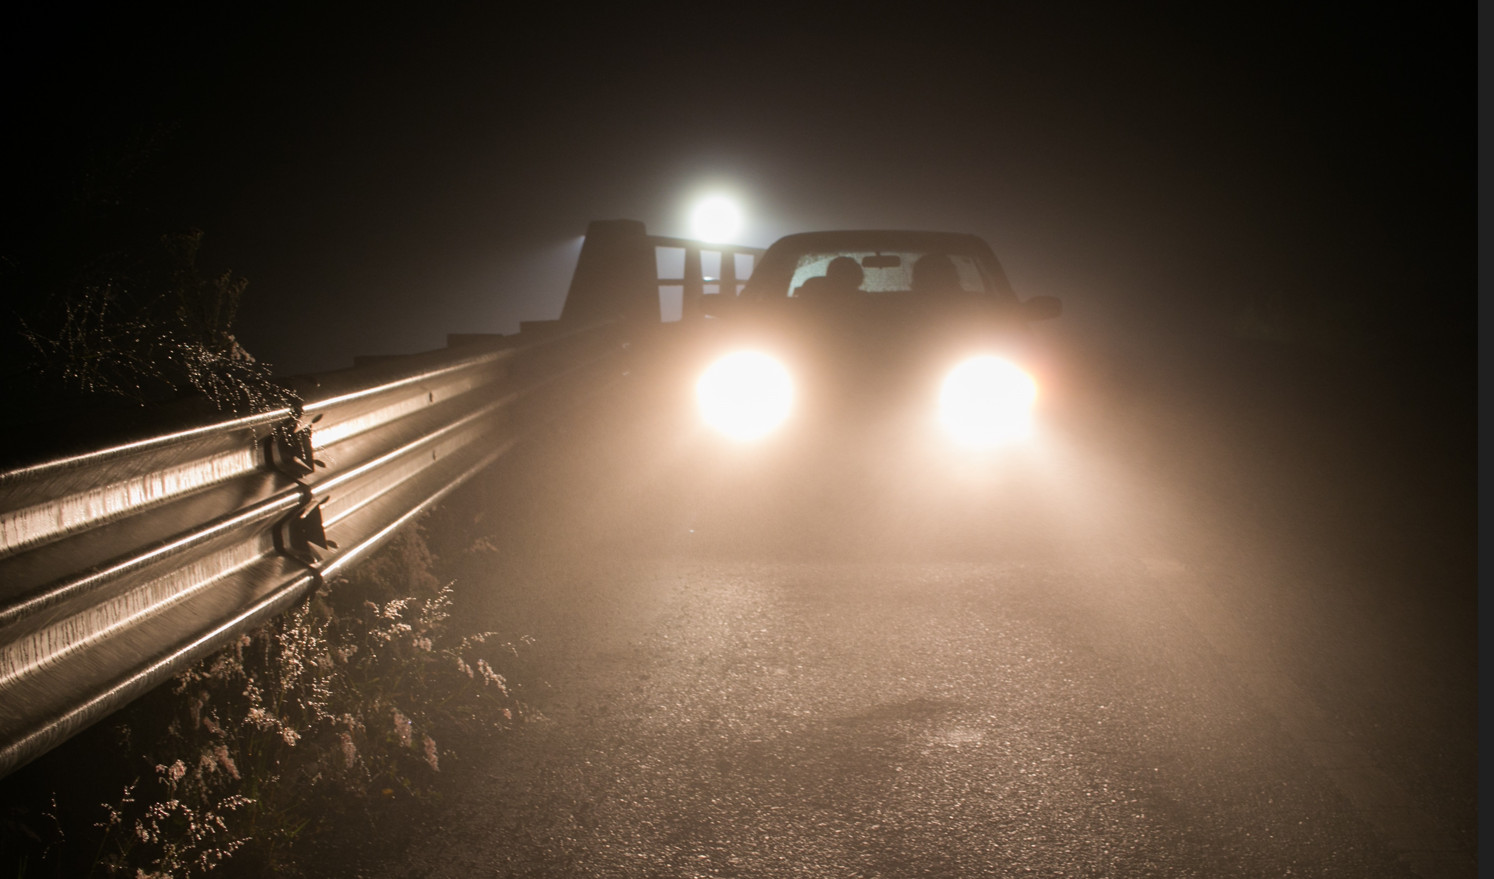 Στοιχειωμένος δρόμος: Εκεί που εκατοντάδες οδηγοί έχουν χάσει τη ζωή τους